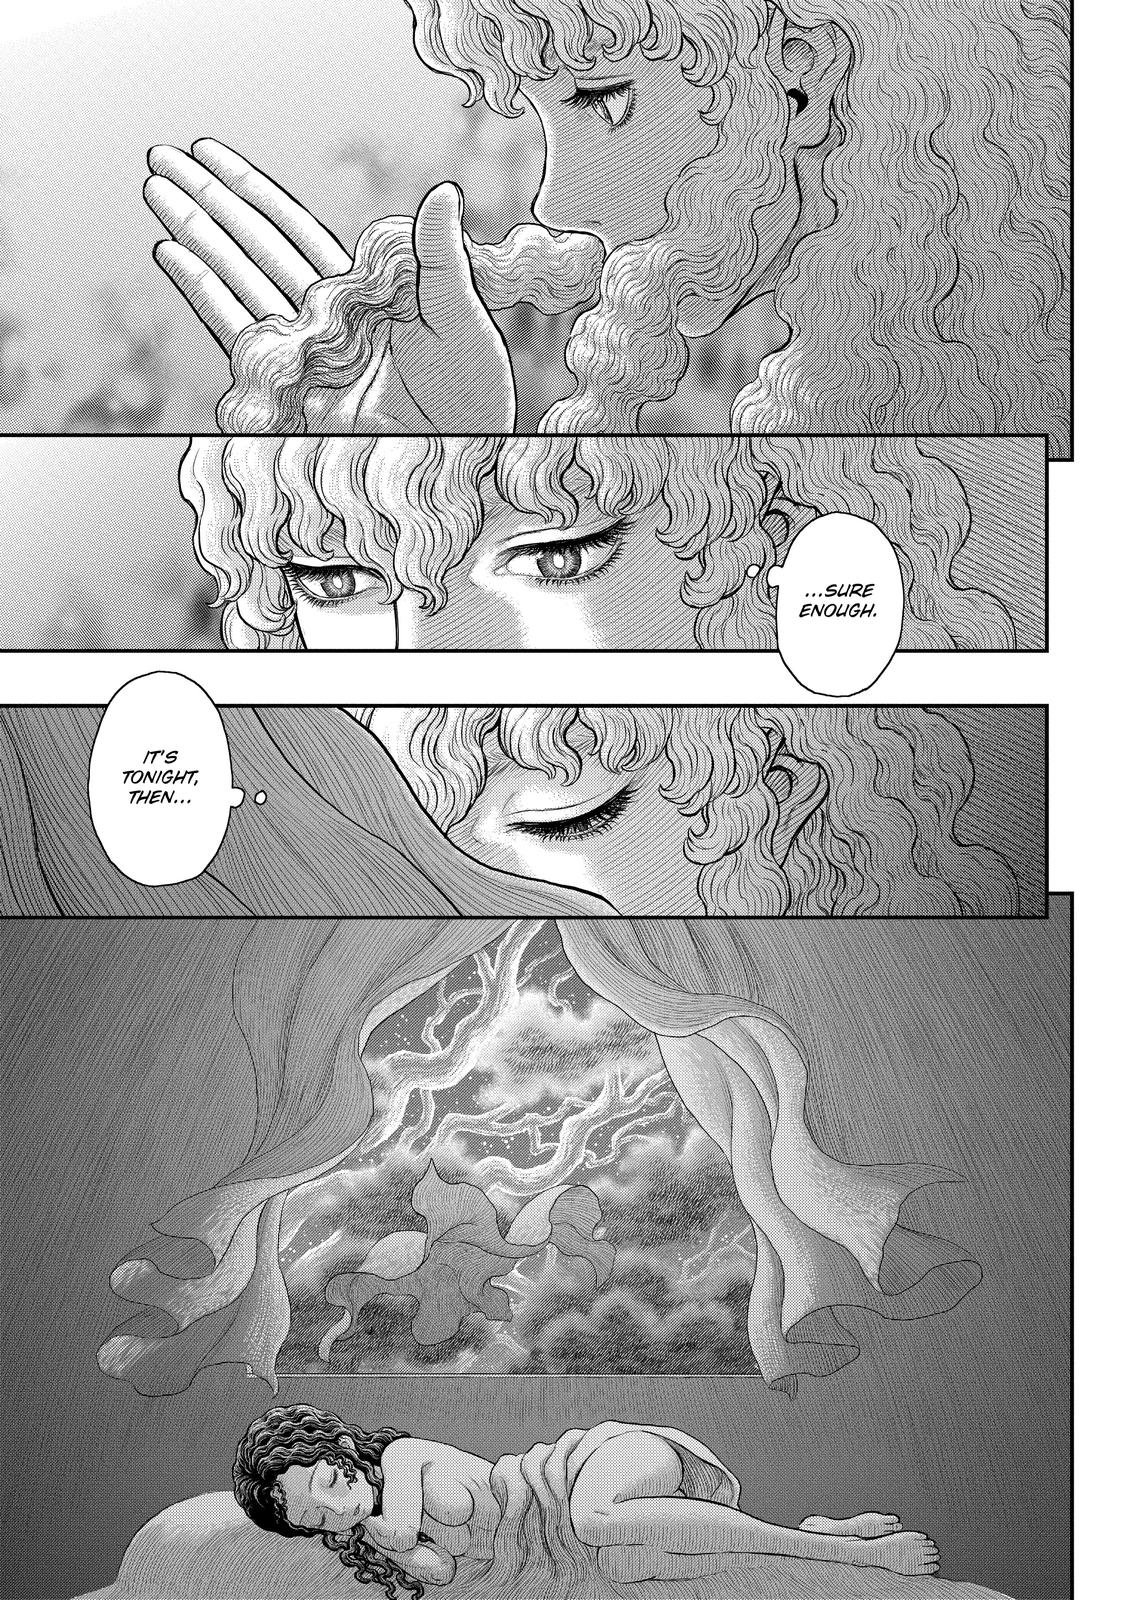 Berserk Manga Chapter 358 image 30